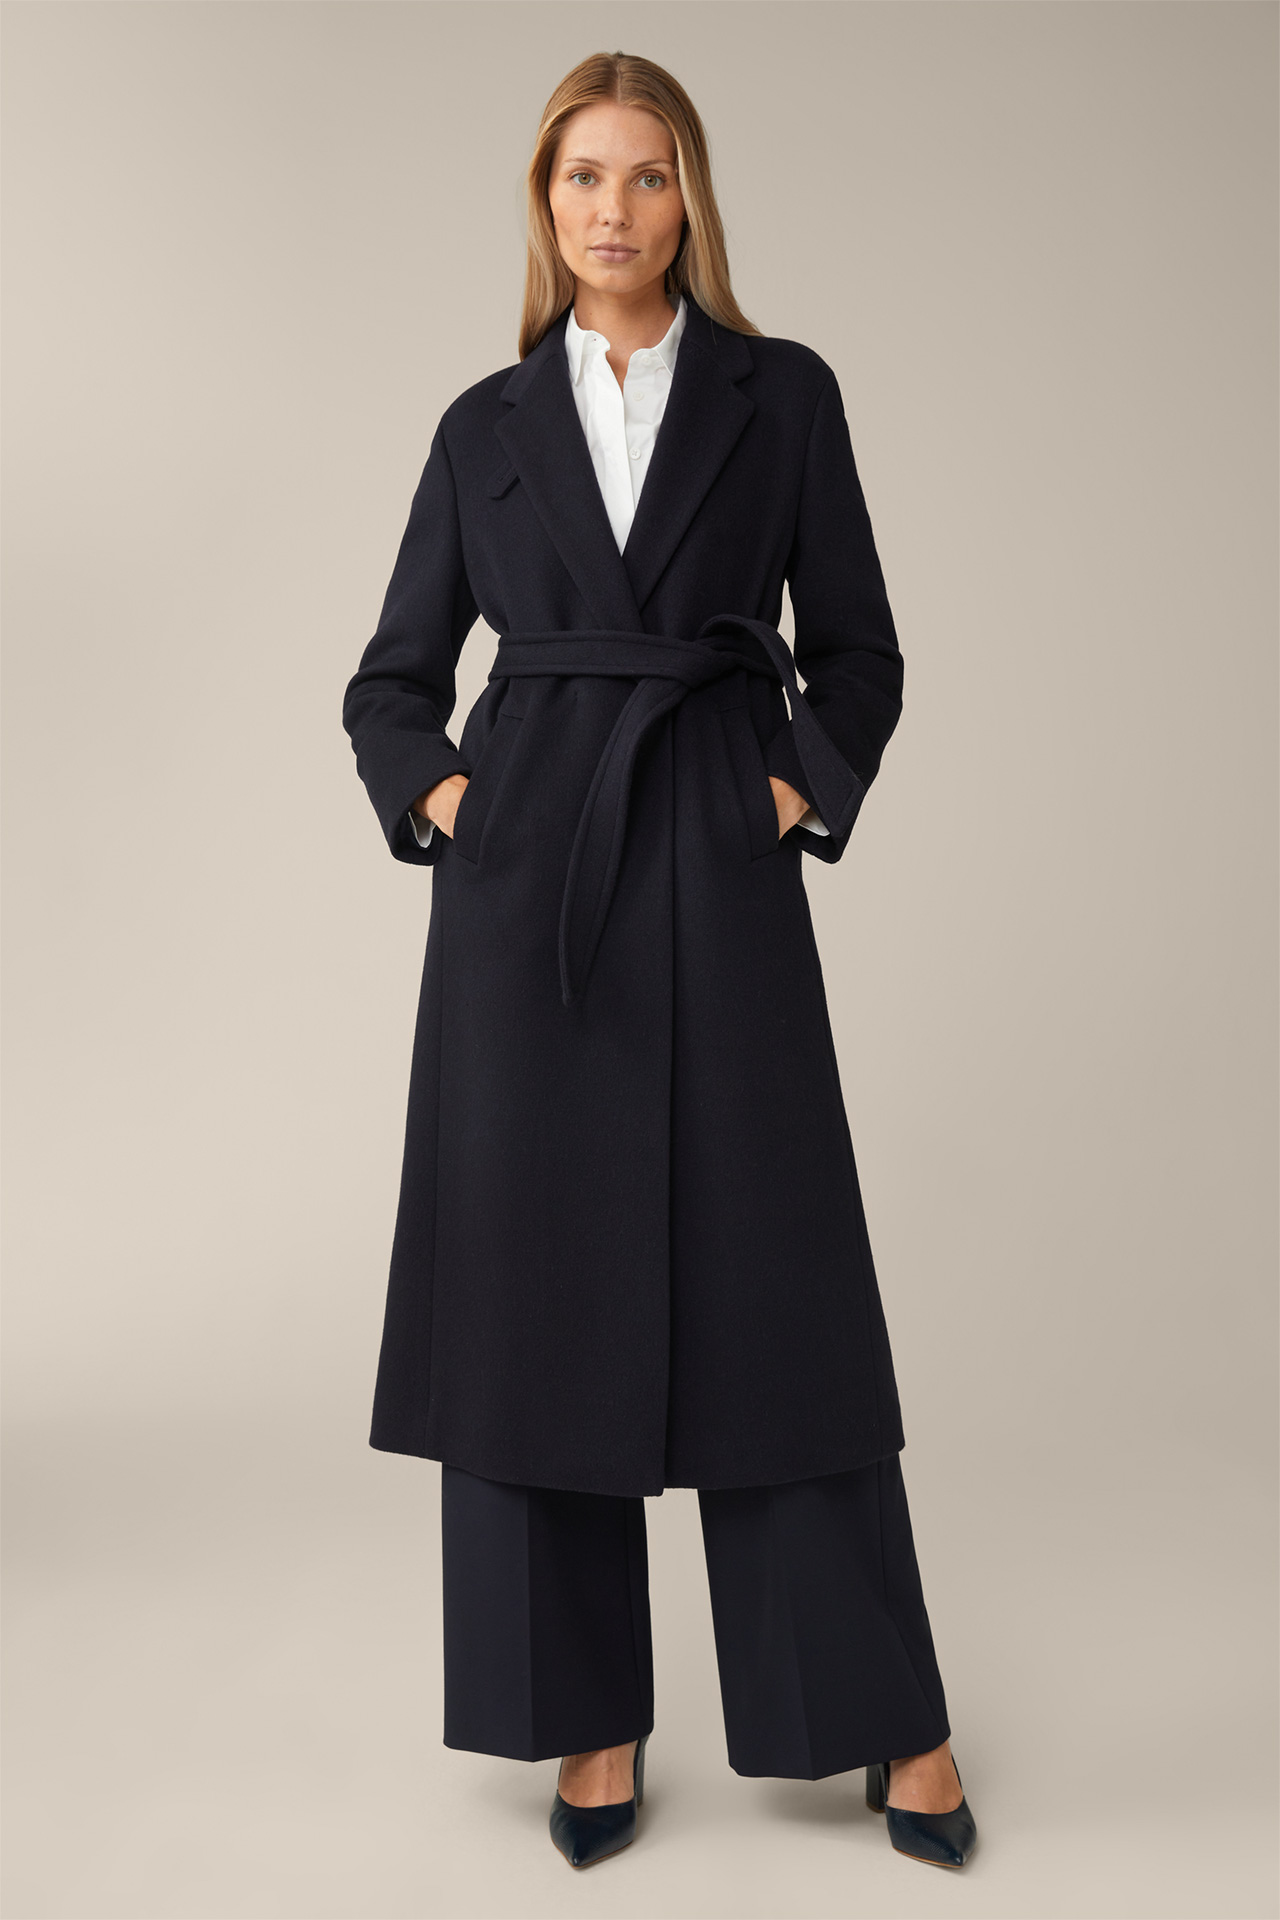 Virgin Wool Roben Coat with Cashmere in Navy 